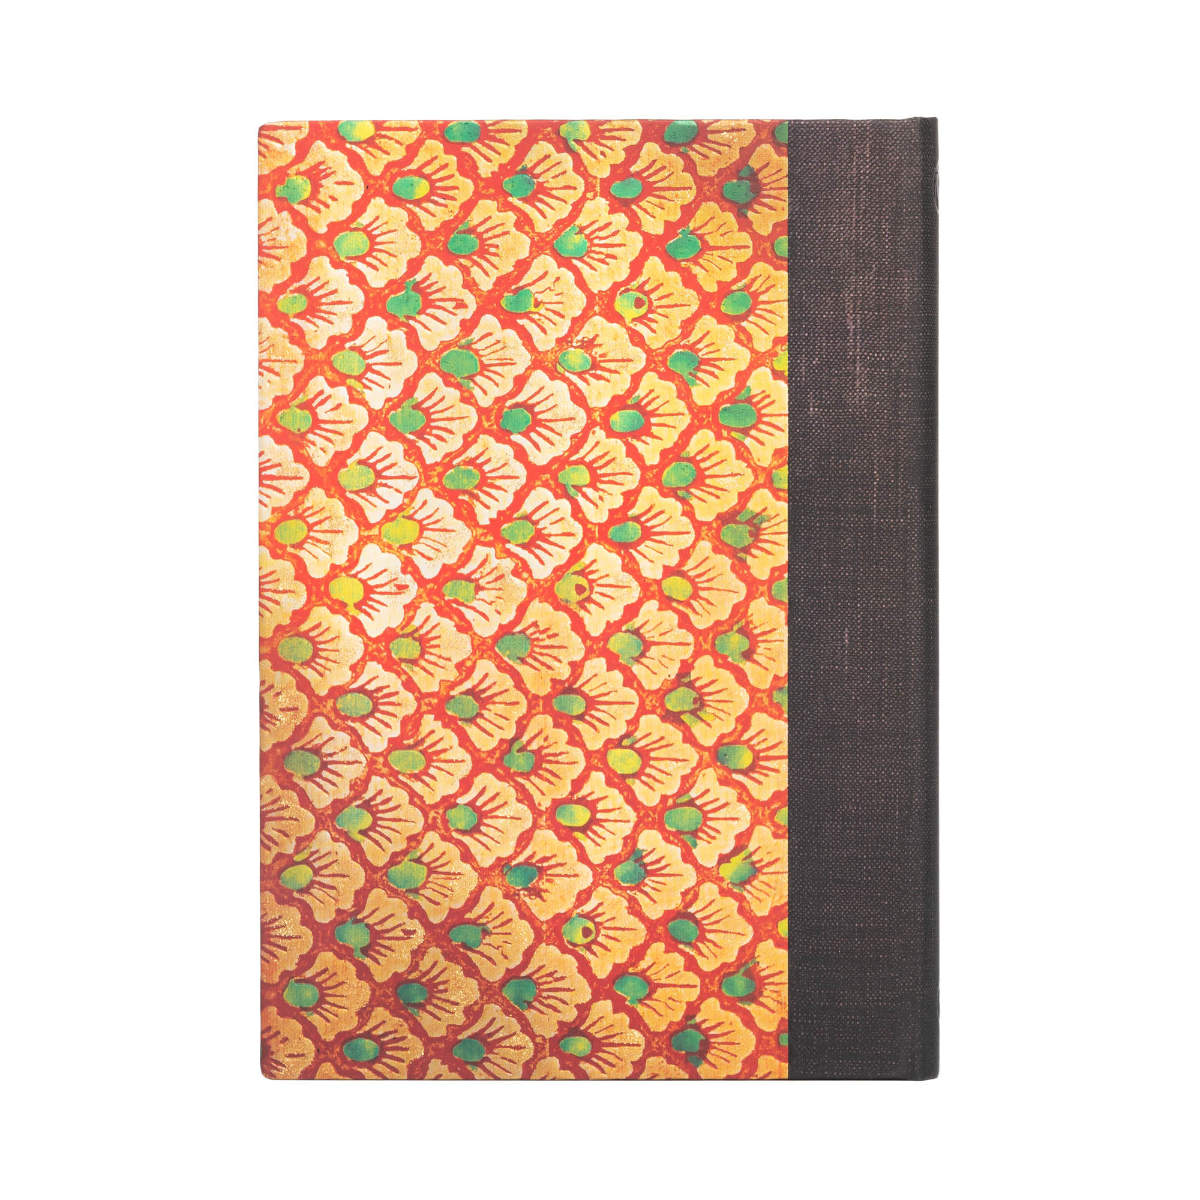 Paperblanks Virginia Woolf The Waves Vol 3 Midi 5x7 Inch Journal